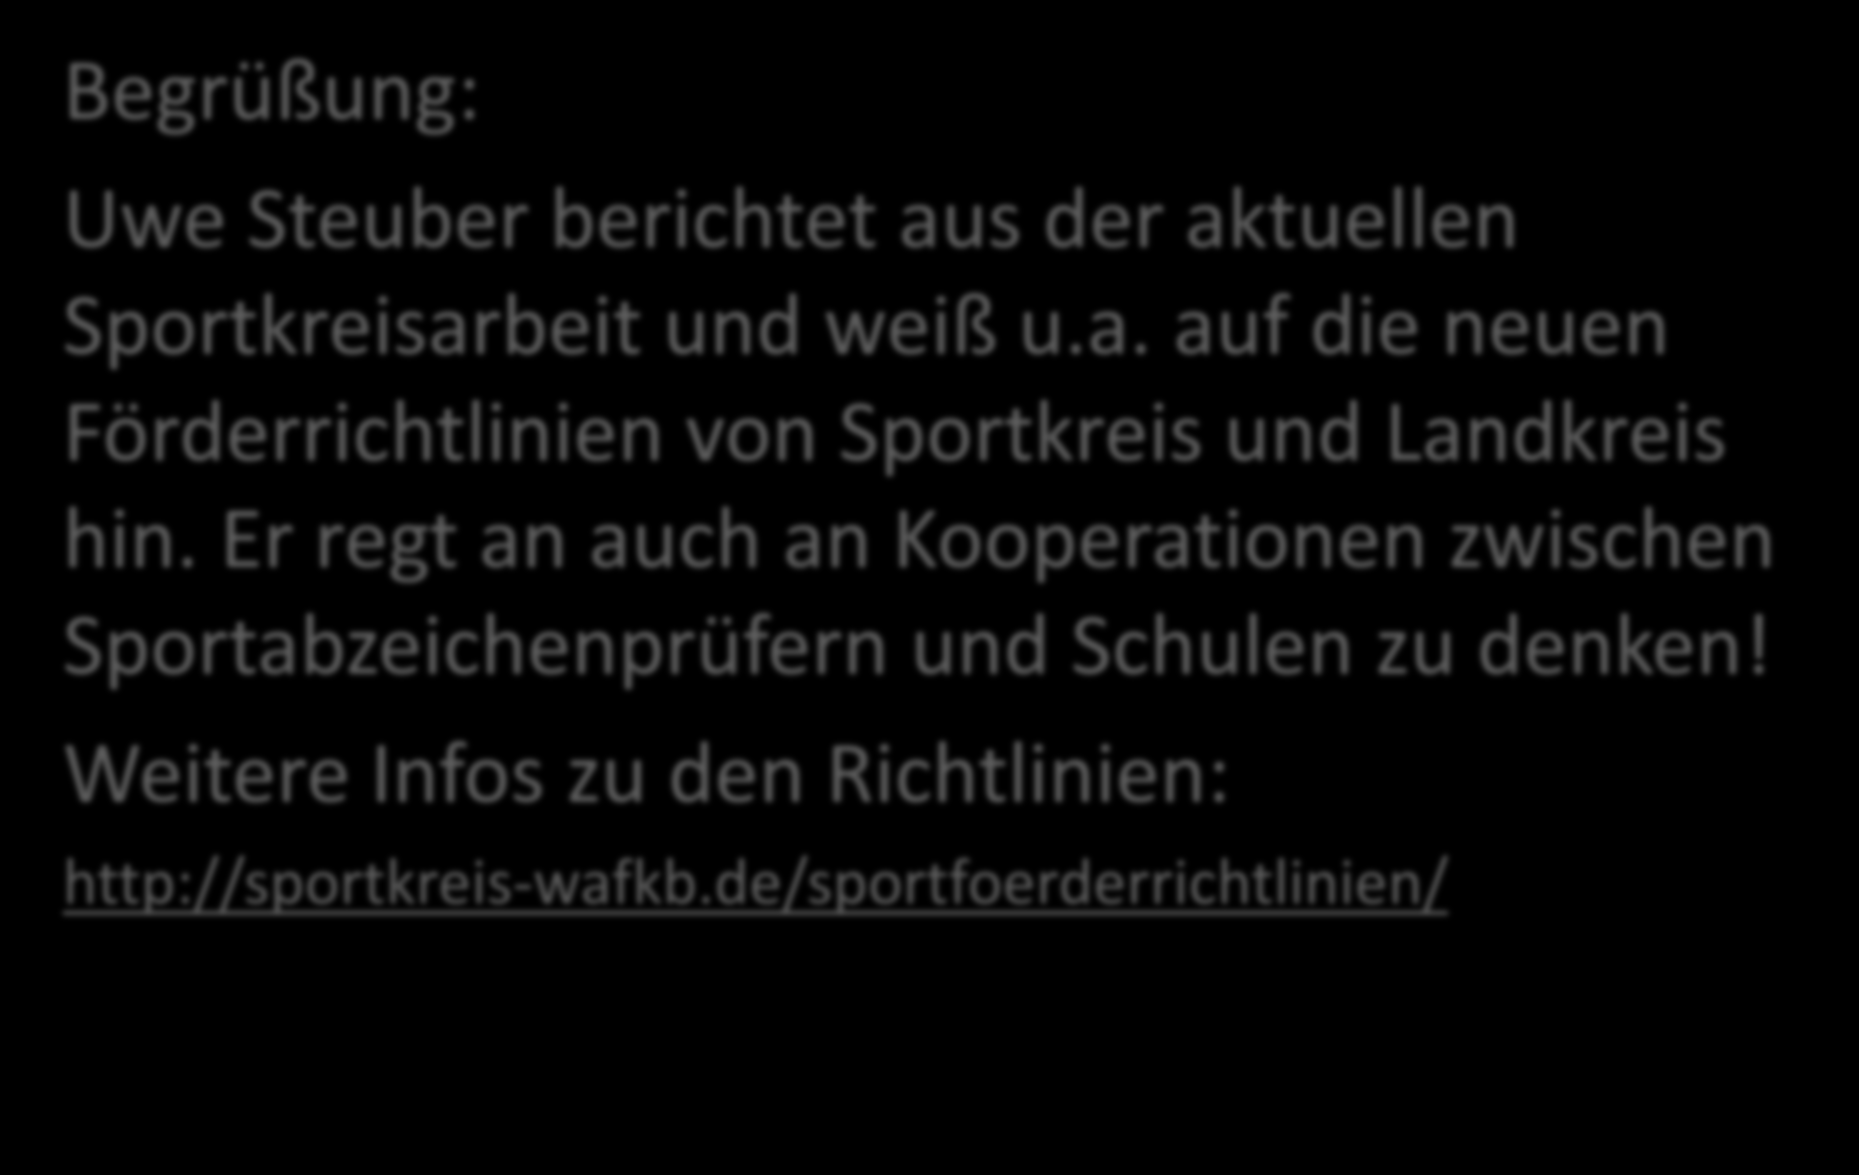 Sportabzeichen-Infotag 2016 Begrüßung: Uwe Steuber berichtet aus der aktuellen